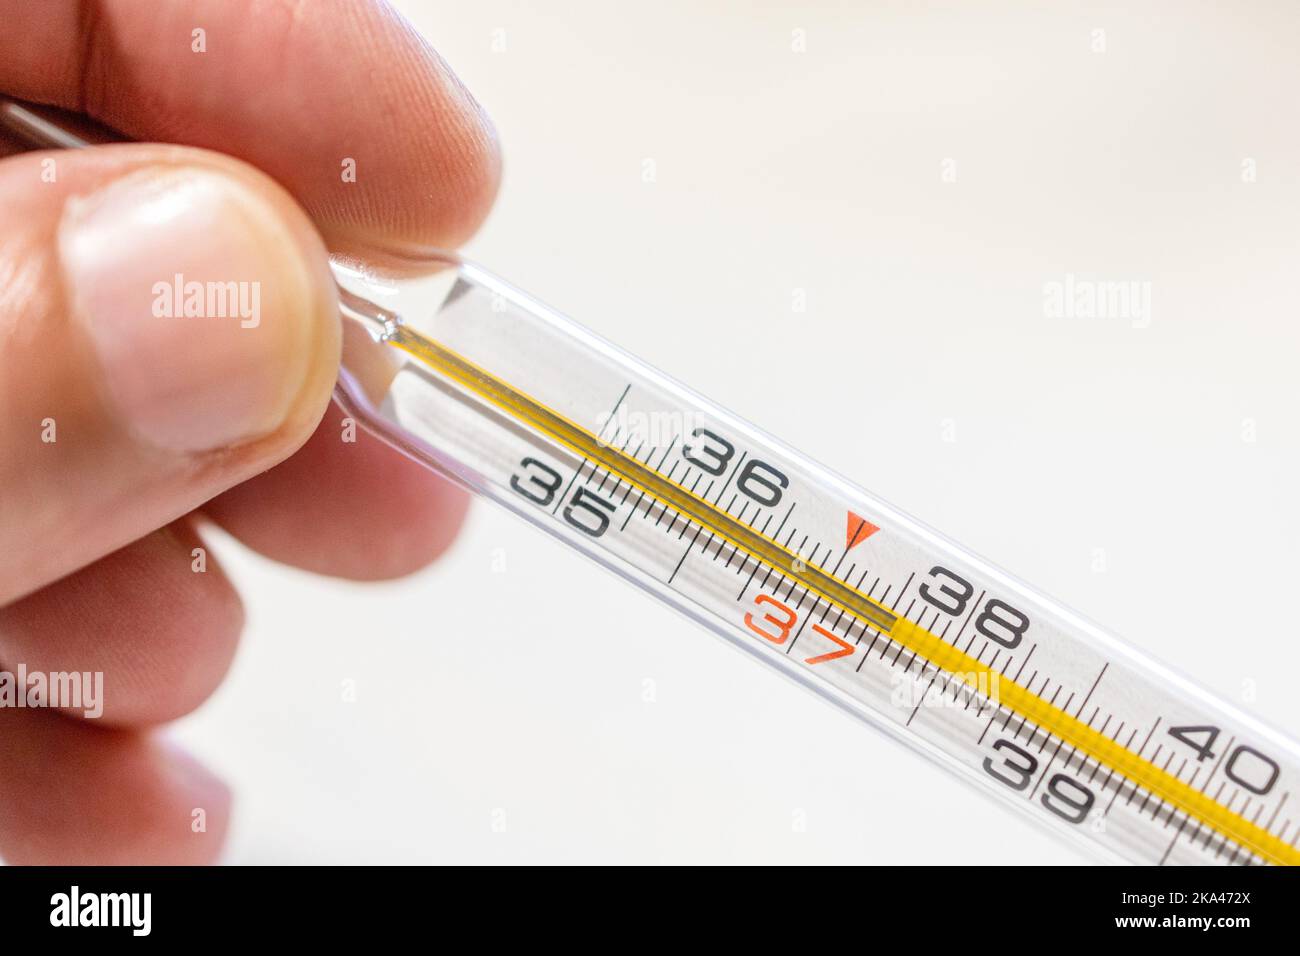 Die Hand hält das Thermometer, um die Temperatur bei 37,5 zu messen, sodass  es Fieber gibt Stockfotografie - Alamy